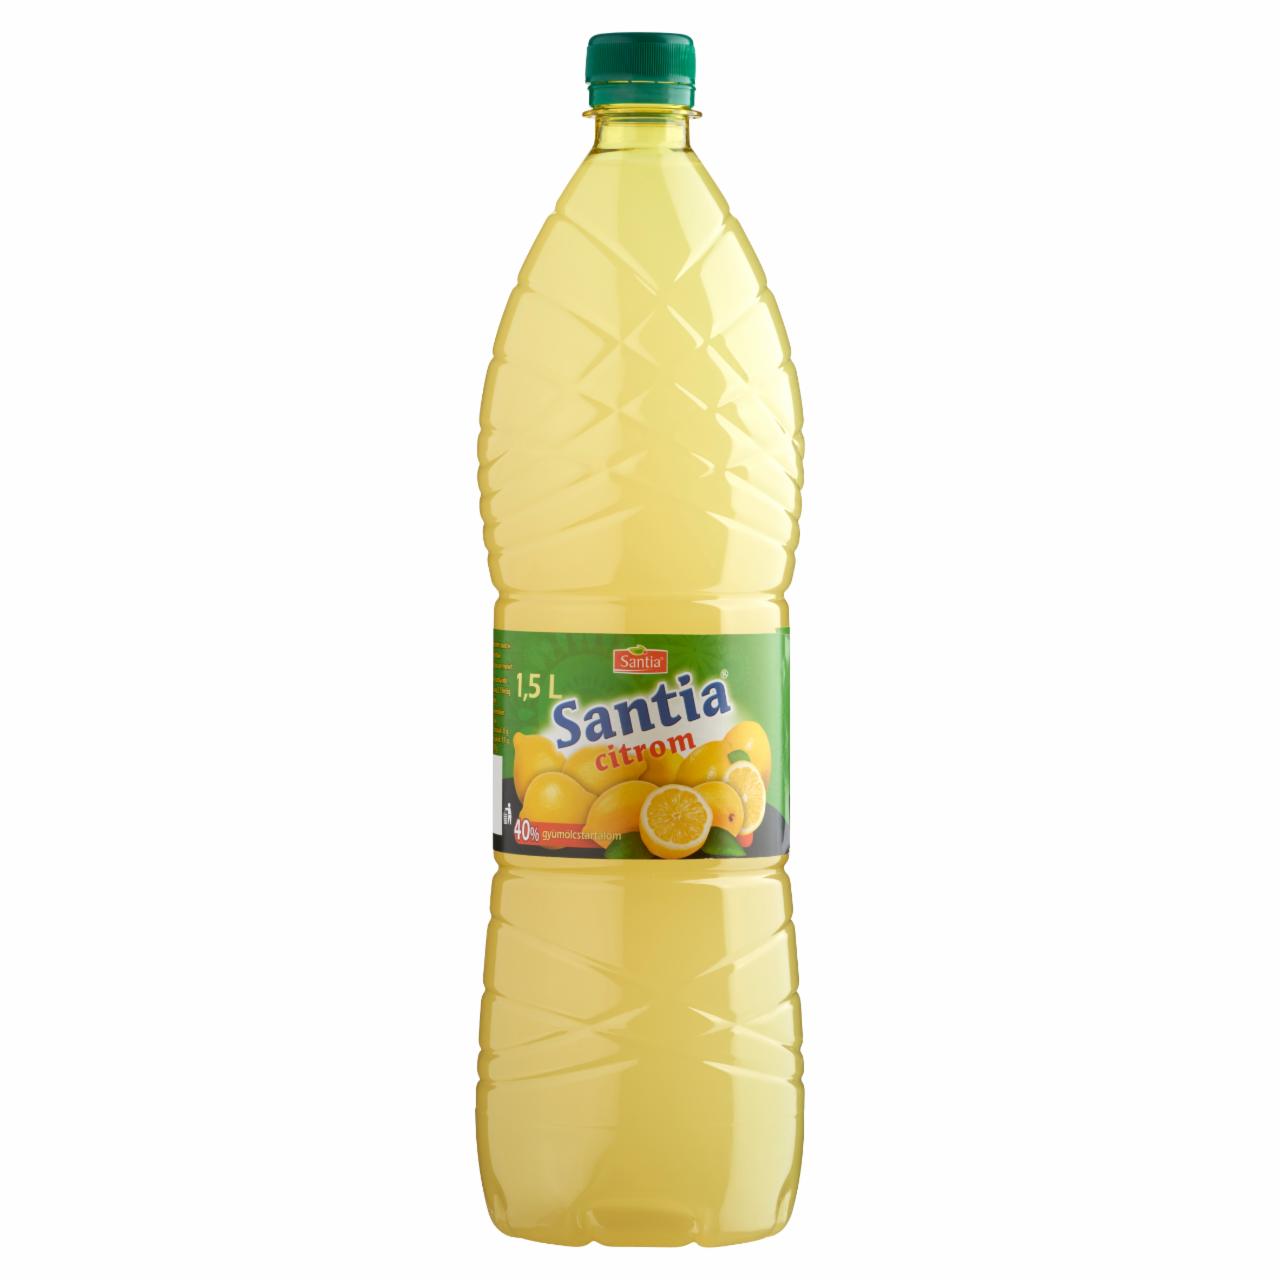 Képek - Santia citromízesítő 1,5 l